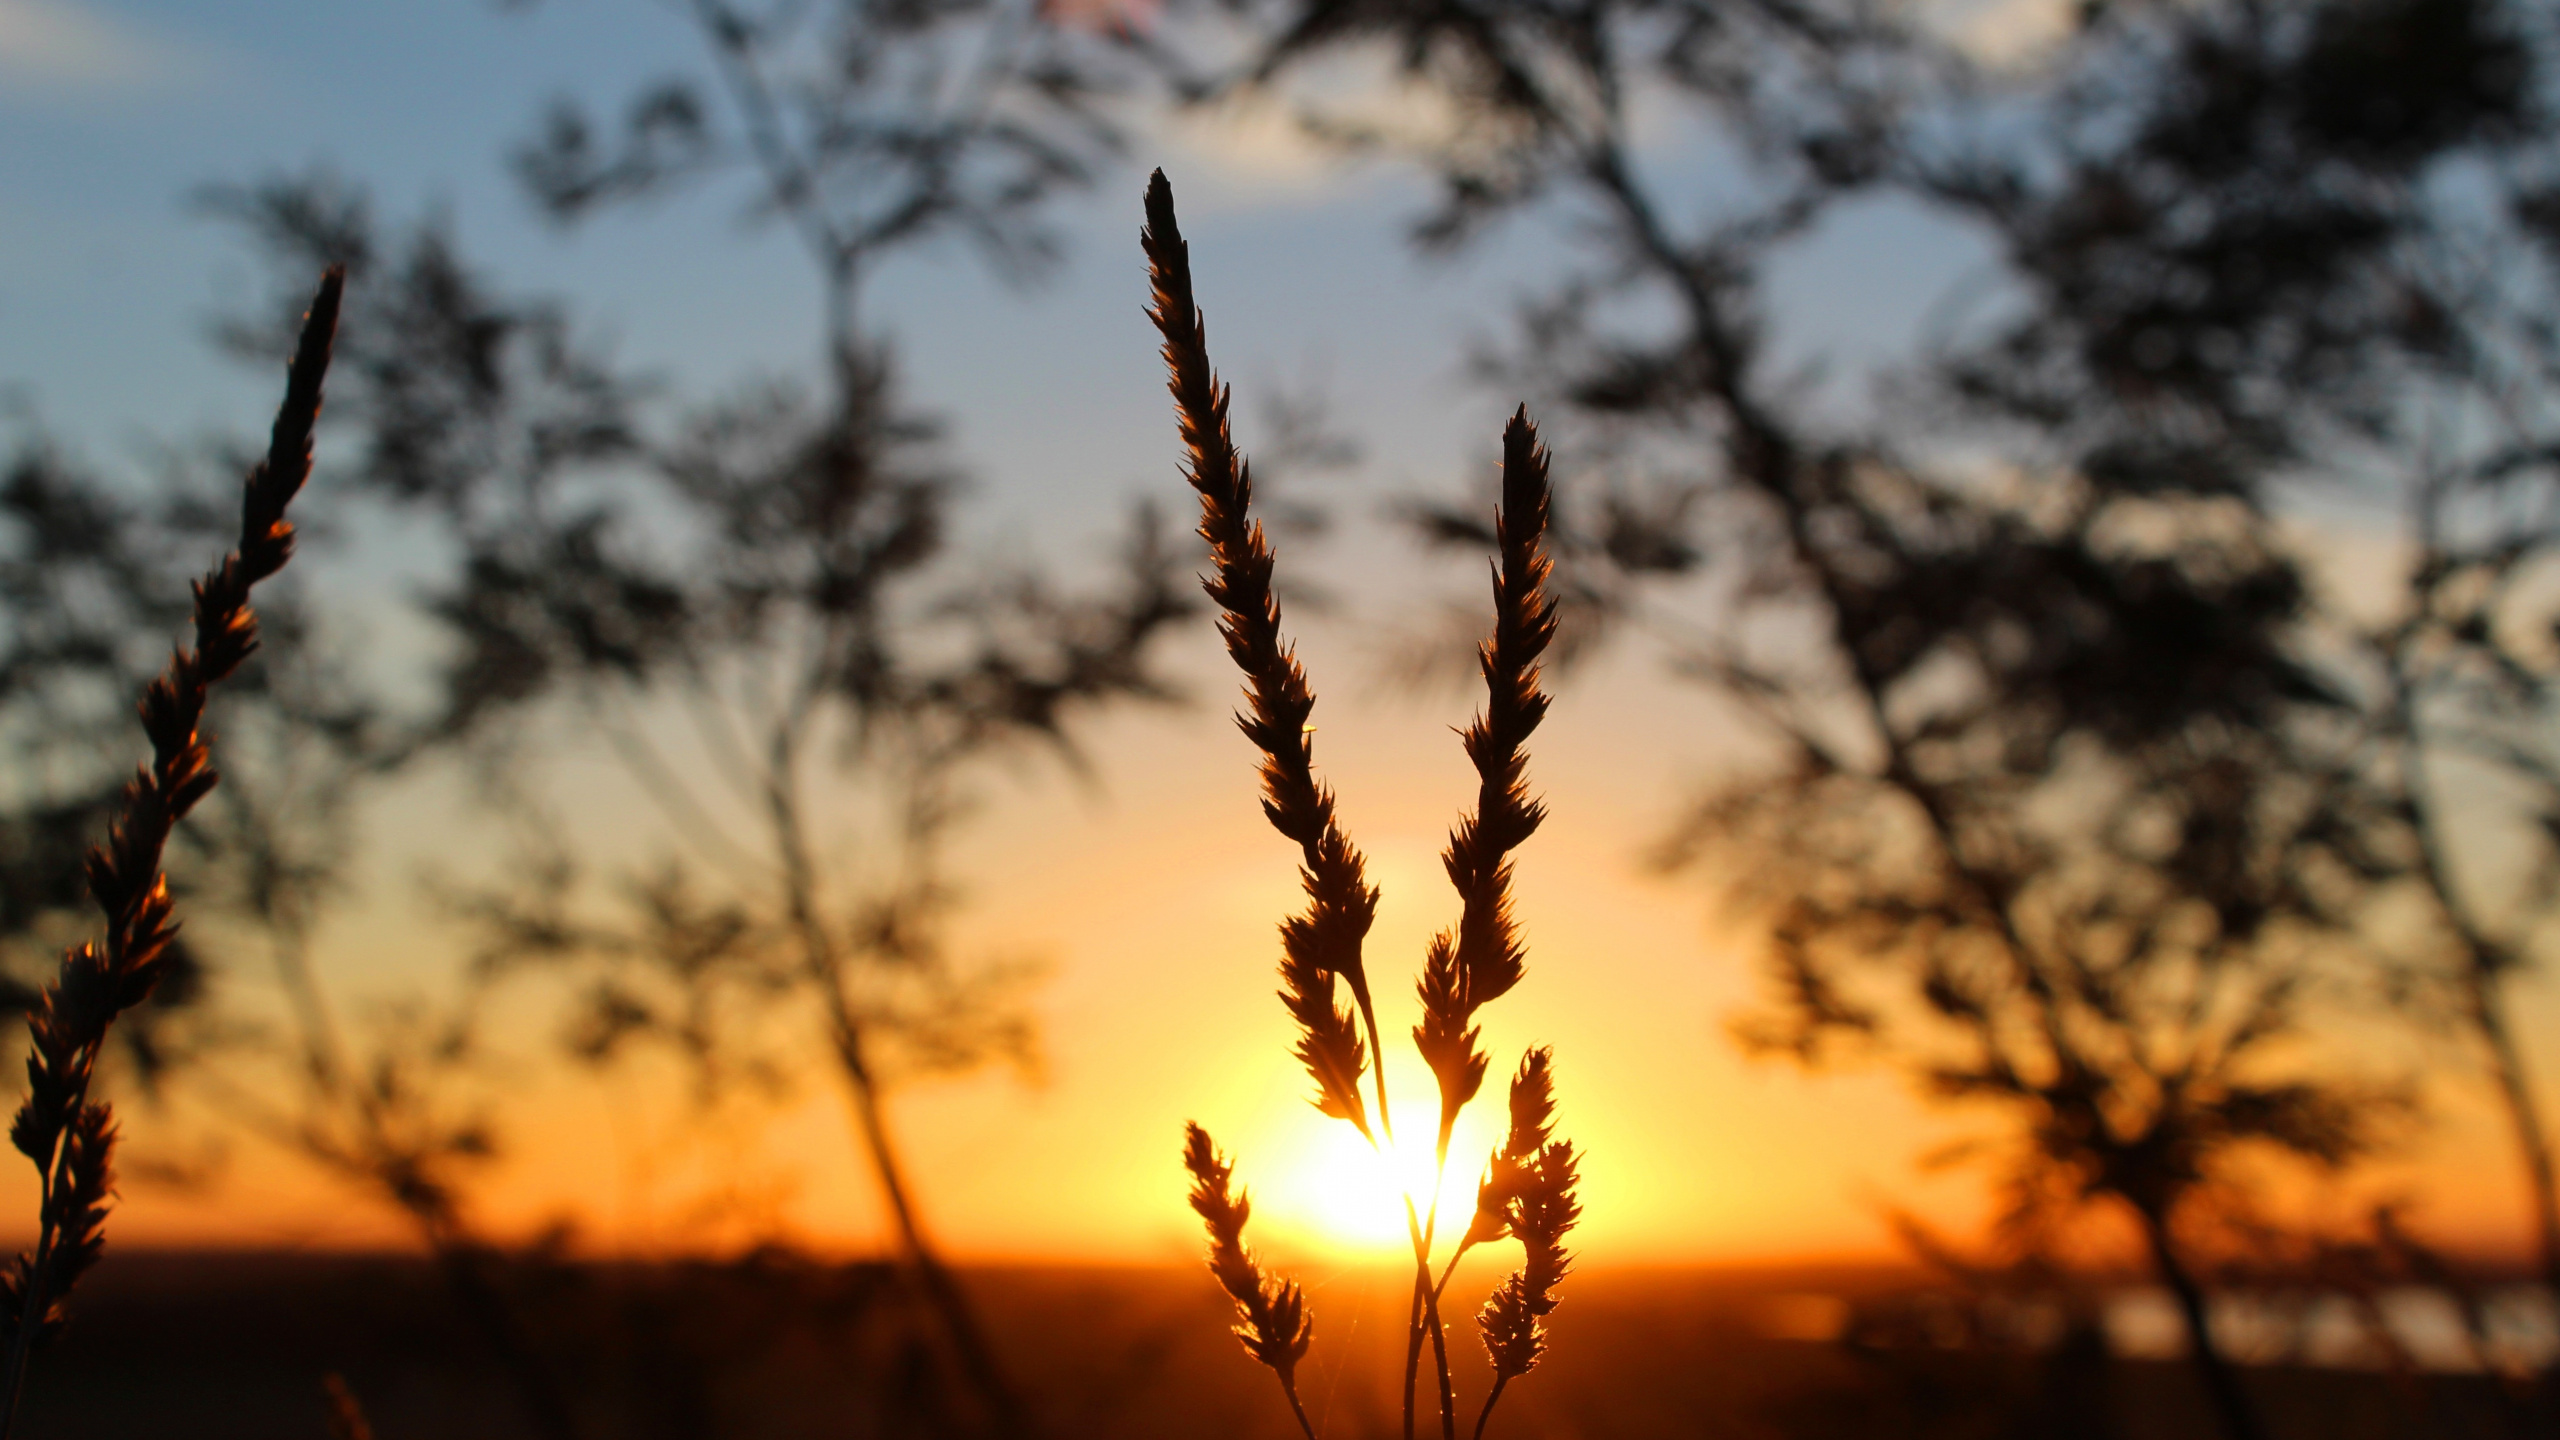 Sunset, Sunlight, Sunrise, Grasses, Dusk. Wallpaper in 2560x1440 Resolution